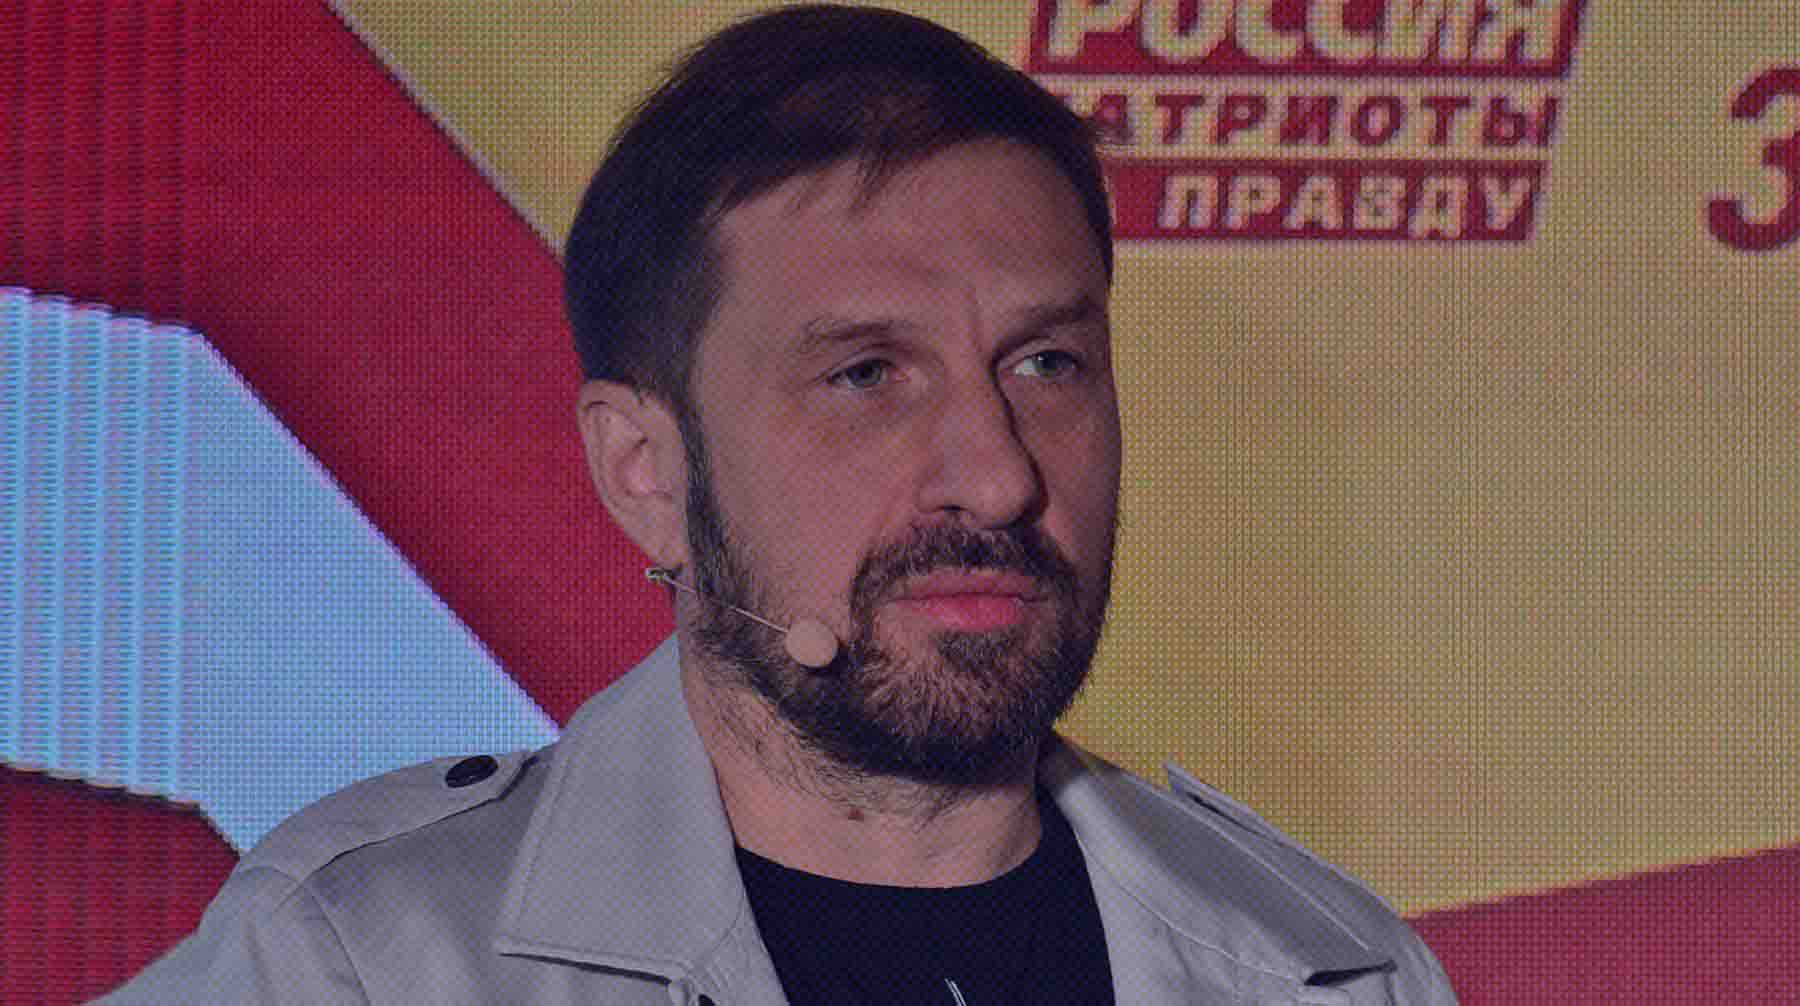 Dailystorm - Депутат Кузнецов заявил, что Украина готова наладить обмен гражданскими пленными «в соответствии с интересами России»